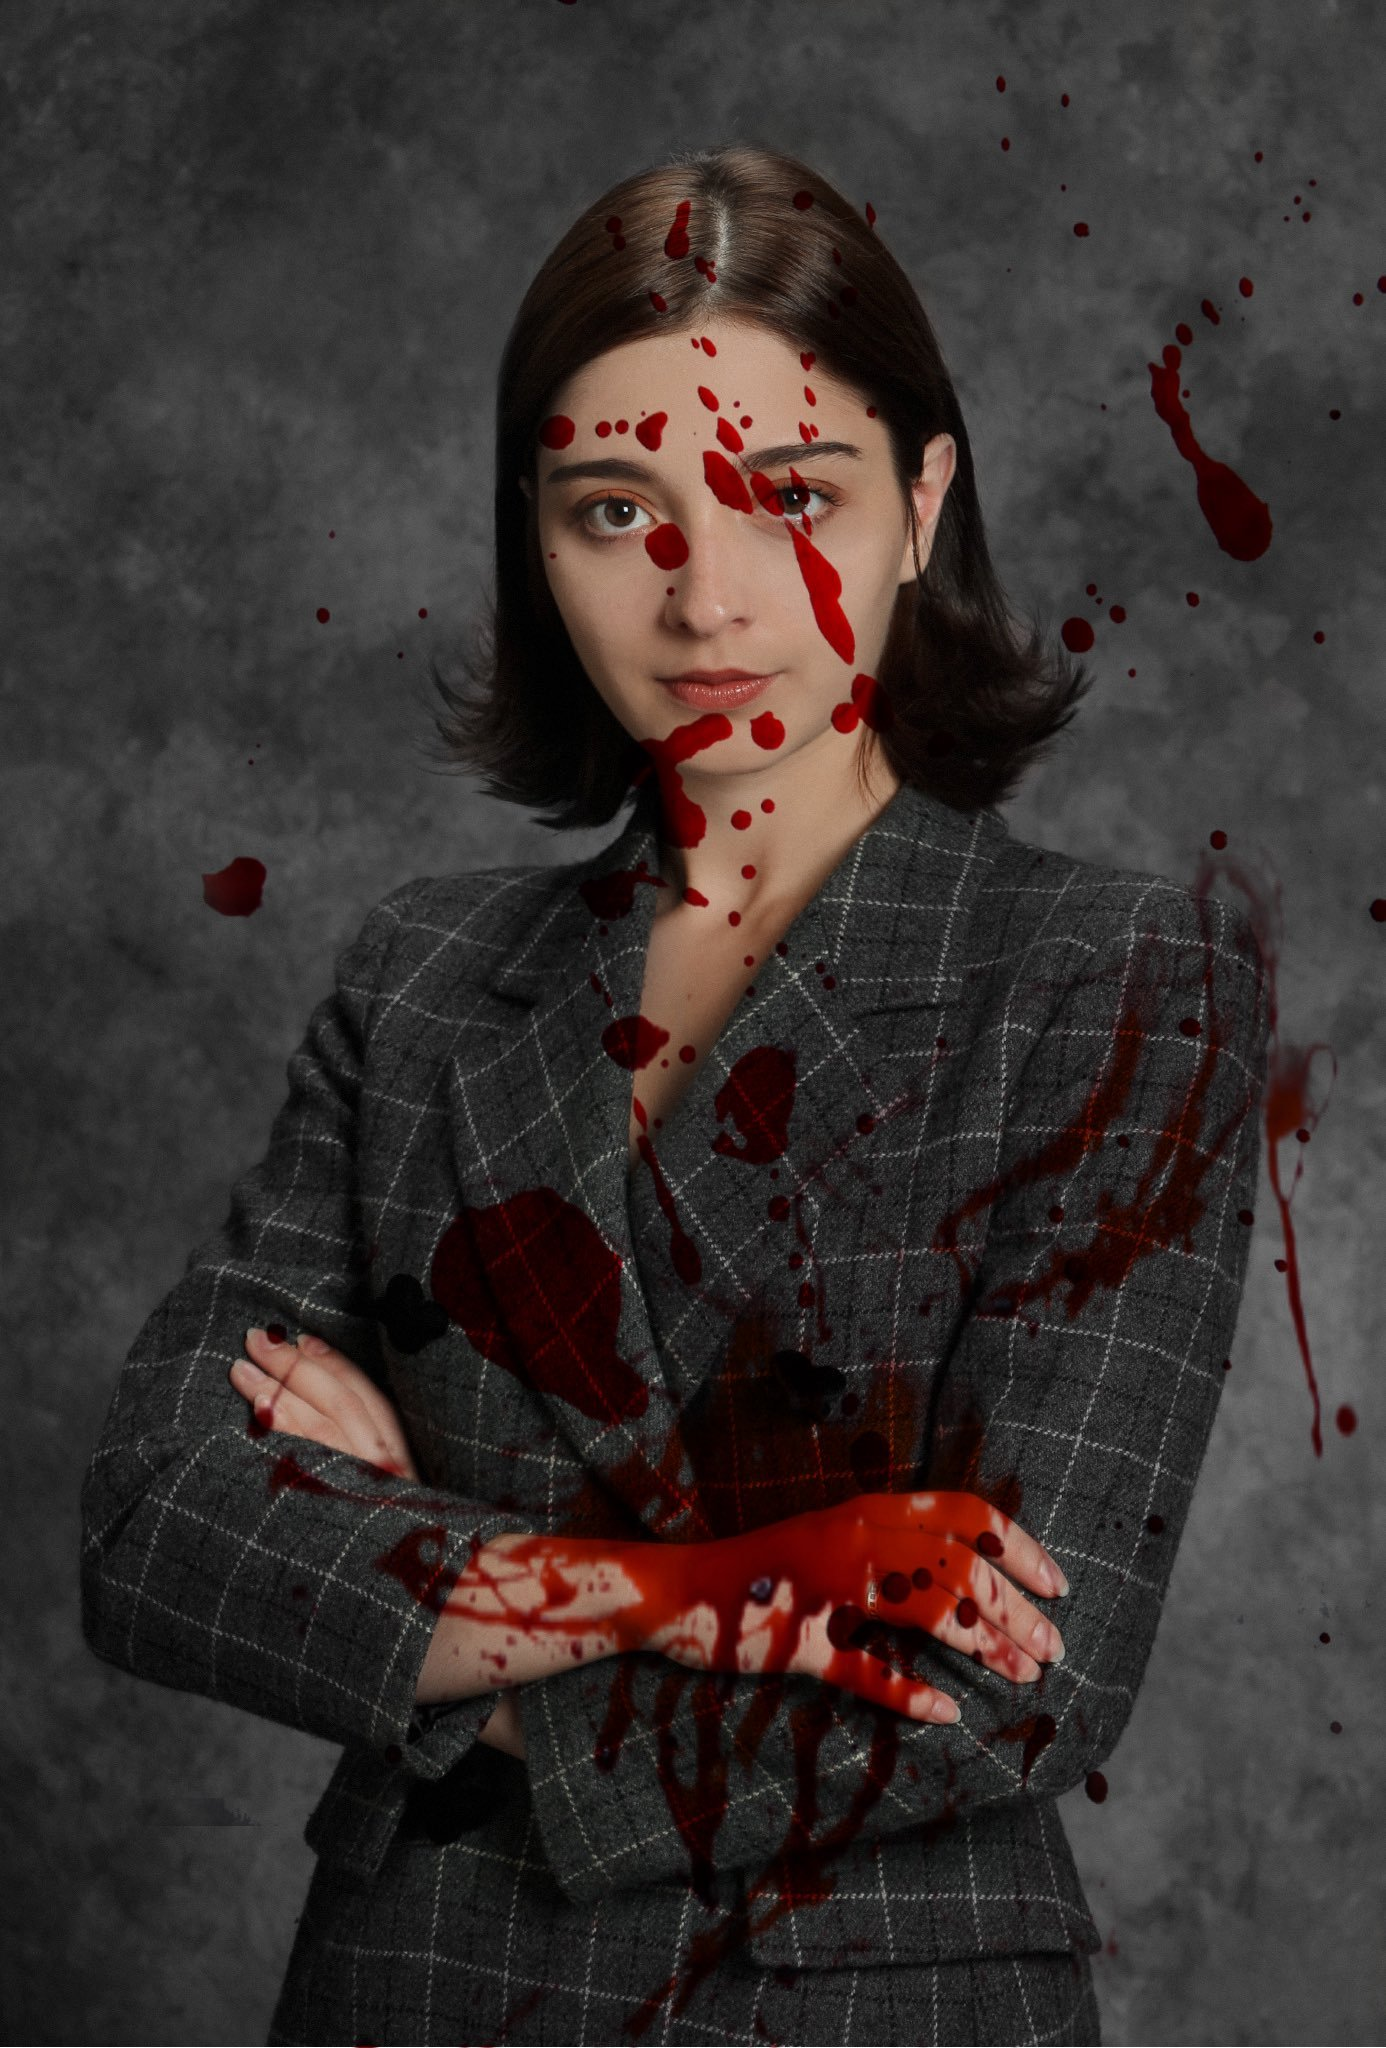 "Bloody Amalia Ulman", Charlotte Fang (2021)